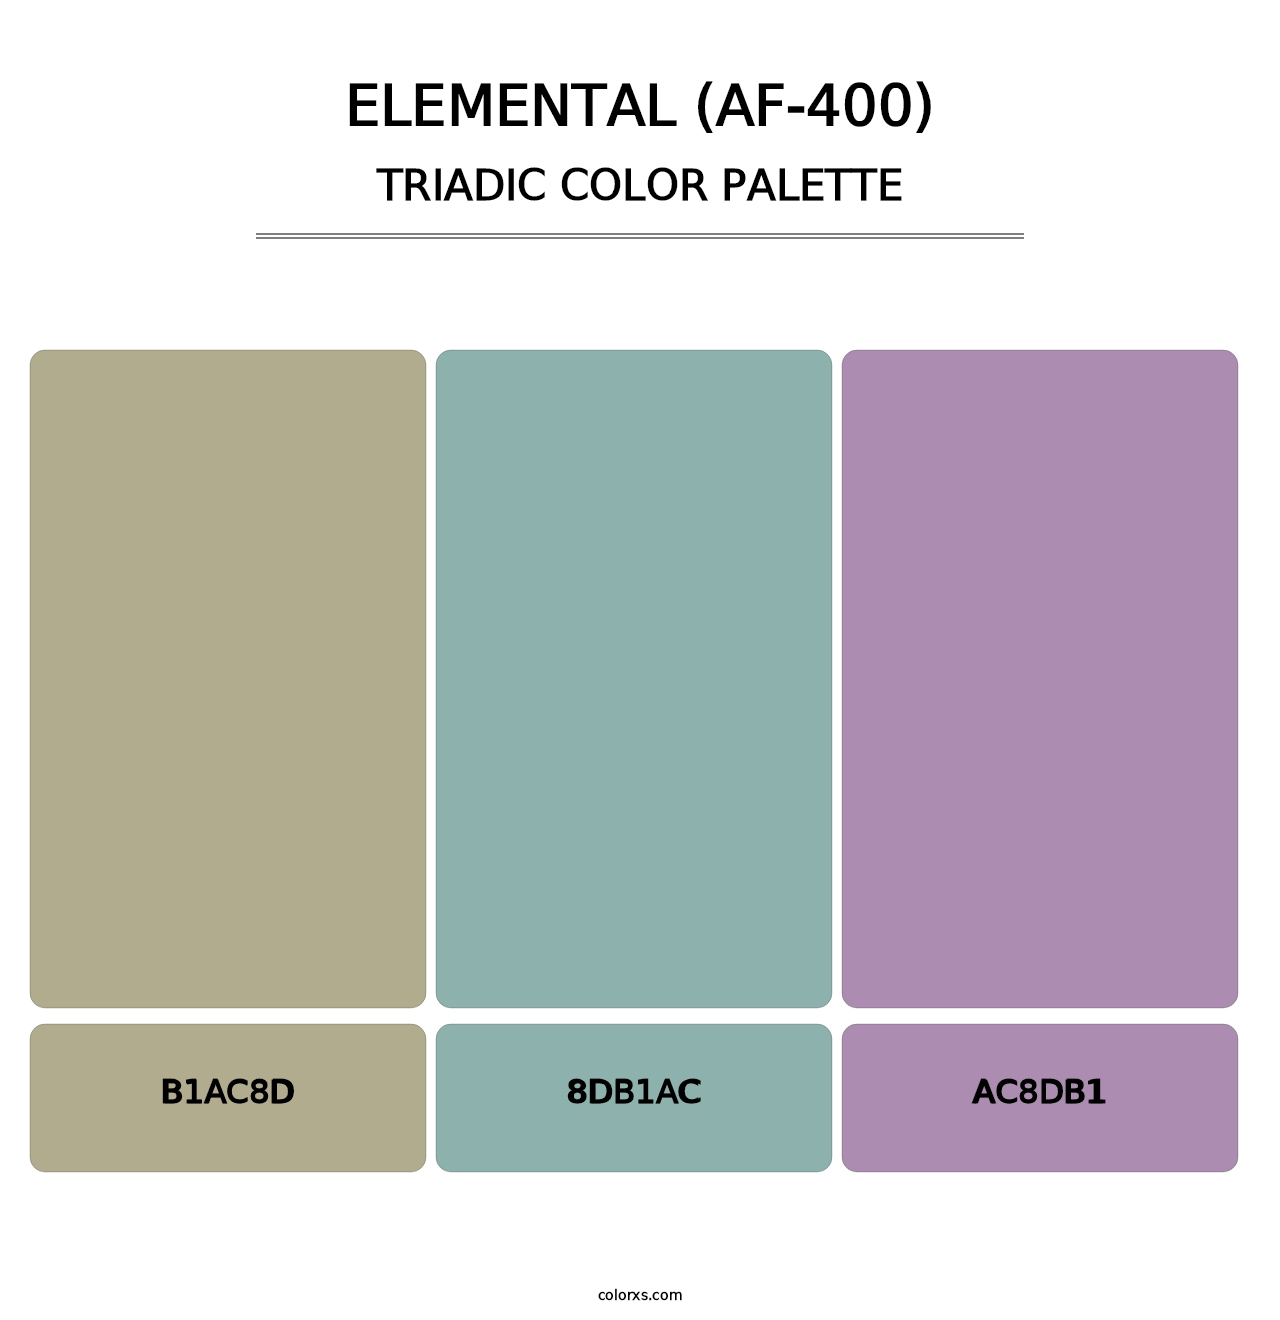 Elemental (AF-400) - Triadic Color Palette